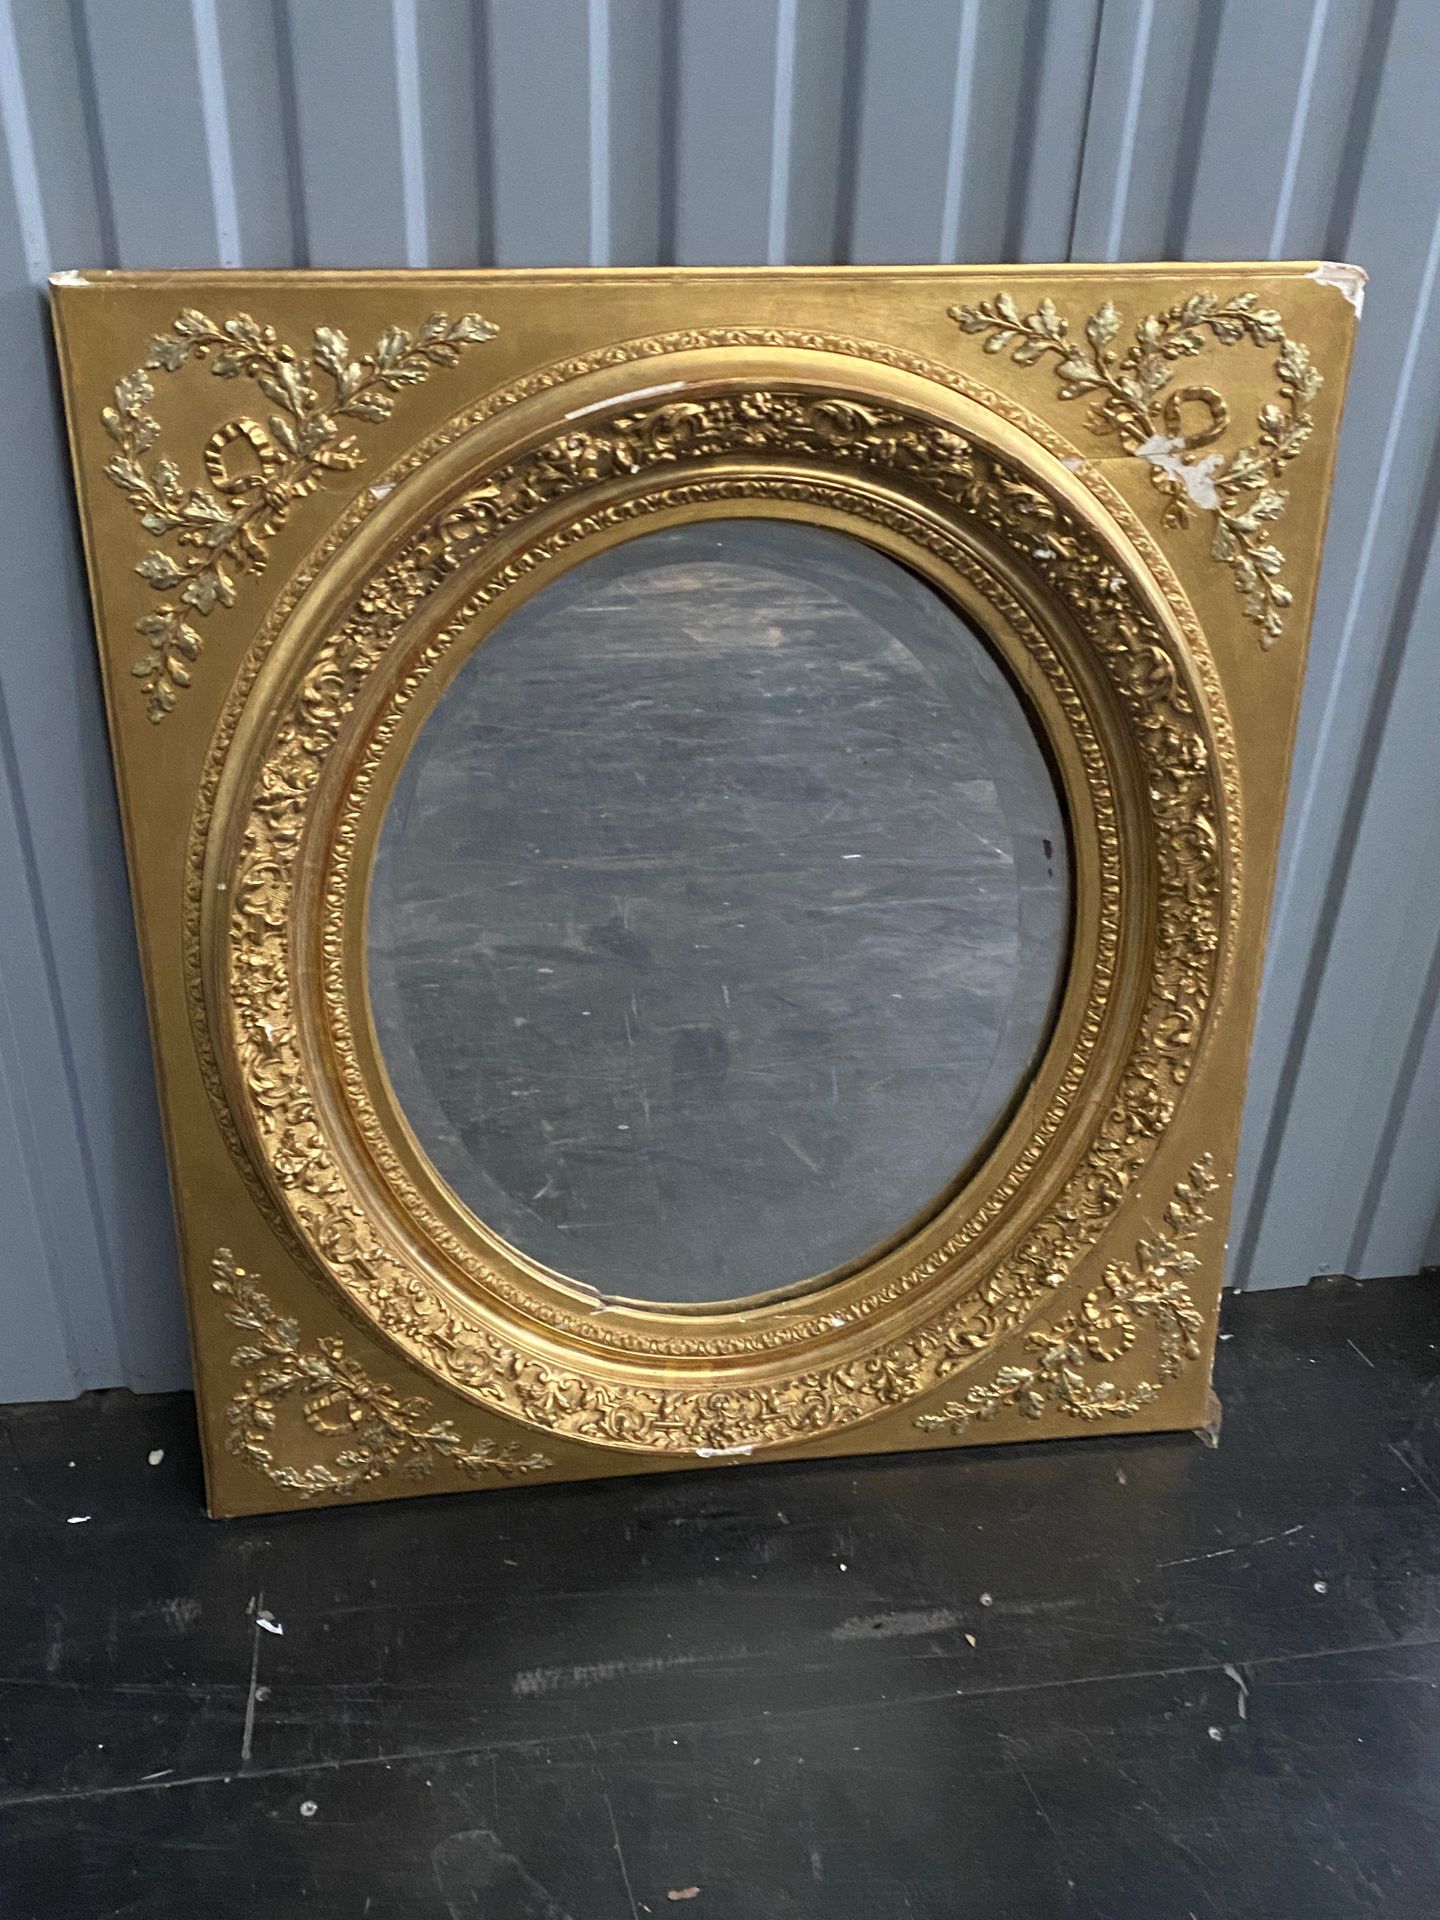 Null Spiegel mit ovaler Ansicht in einem rechteckigen, vergoldeten Rahmen.

Epoc&hellip;